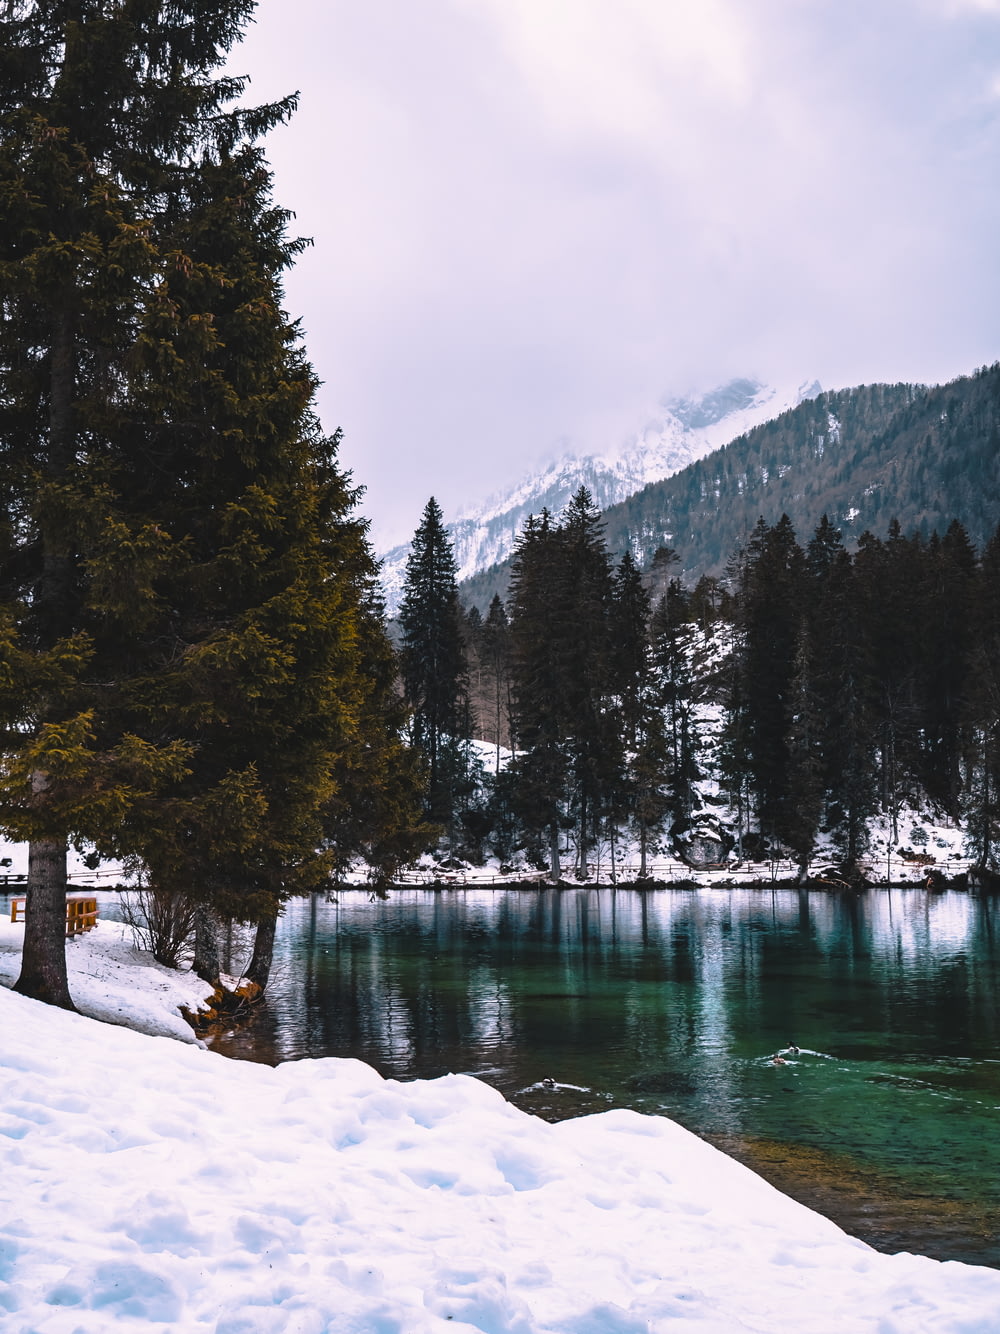 Ein See, umgeben von schneebedeckten Bäumen und Bergen